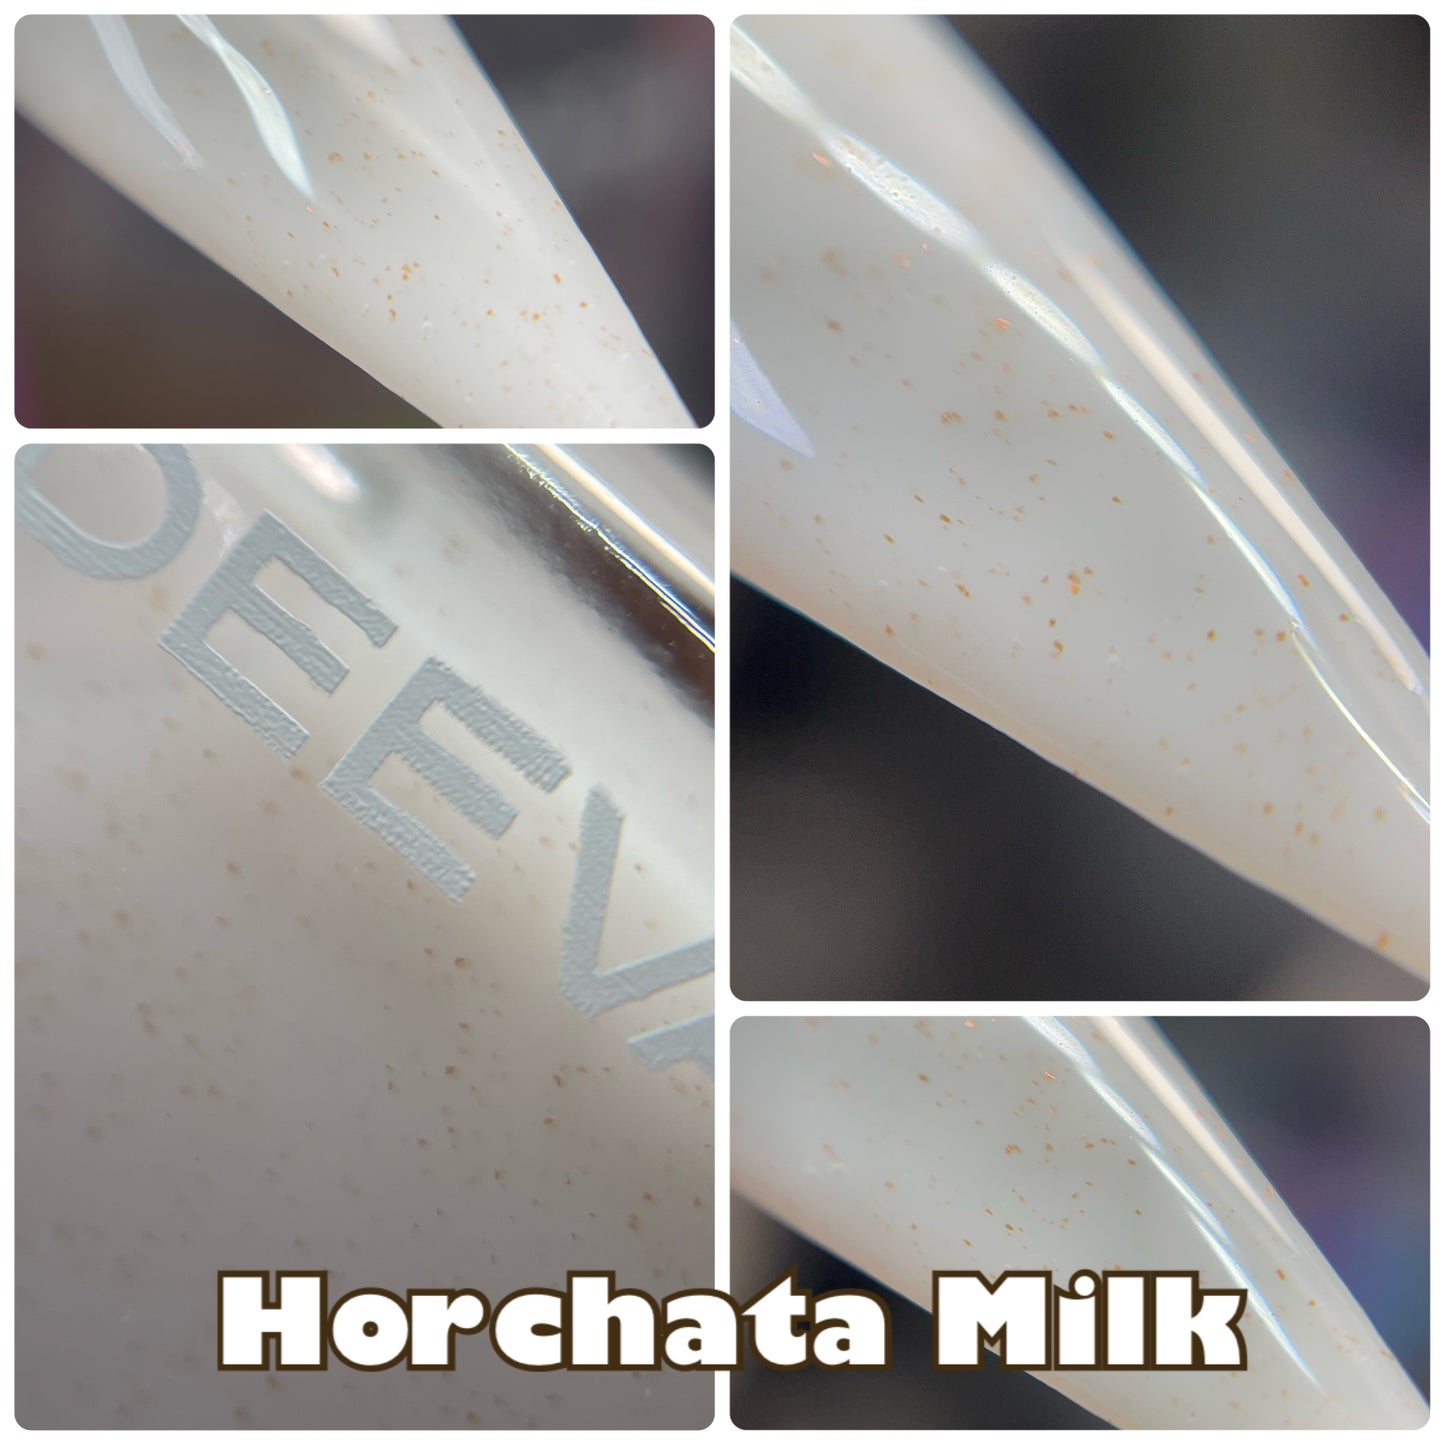 Horchata Milk